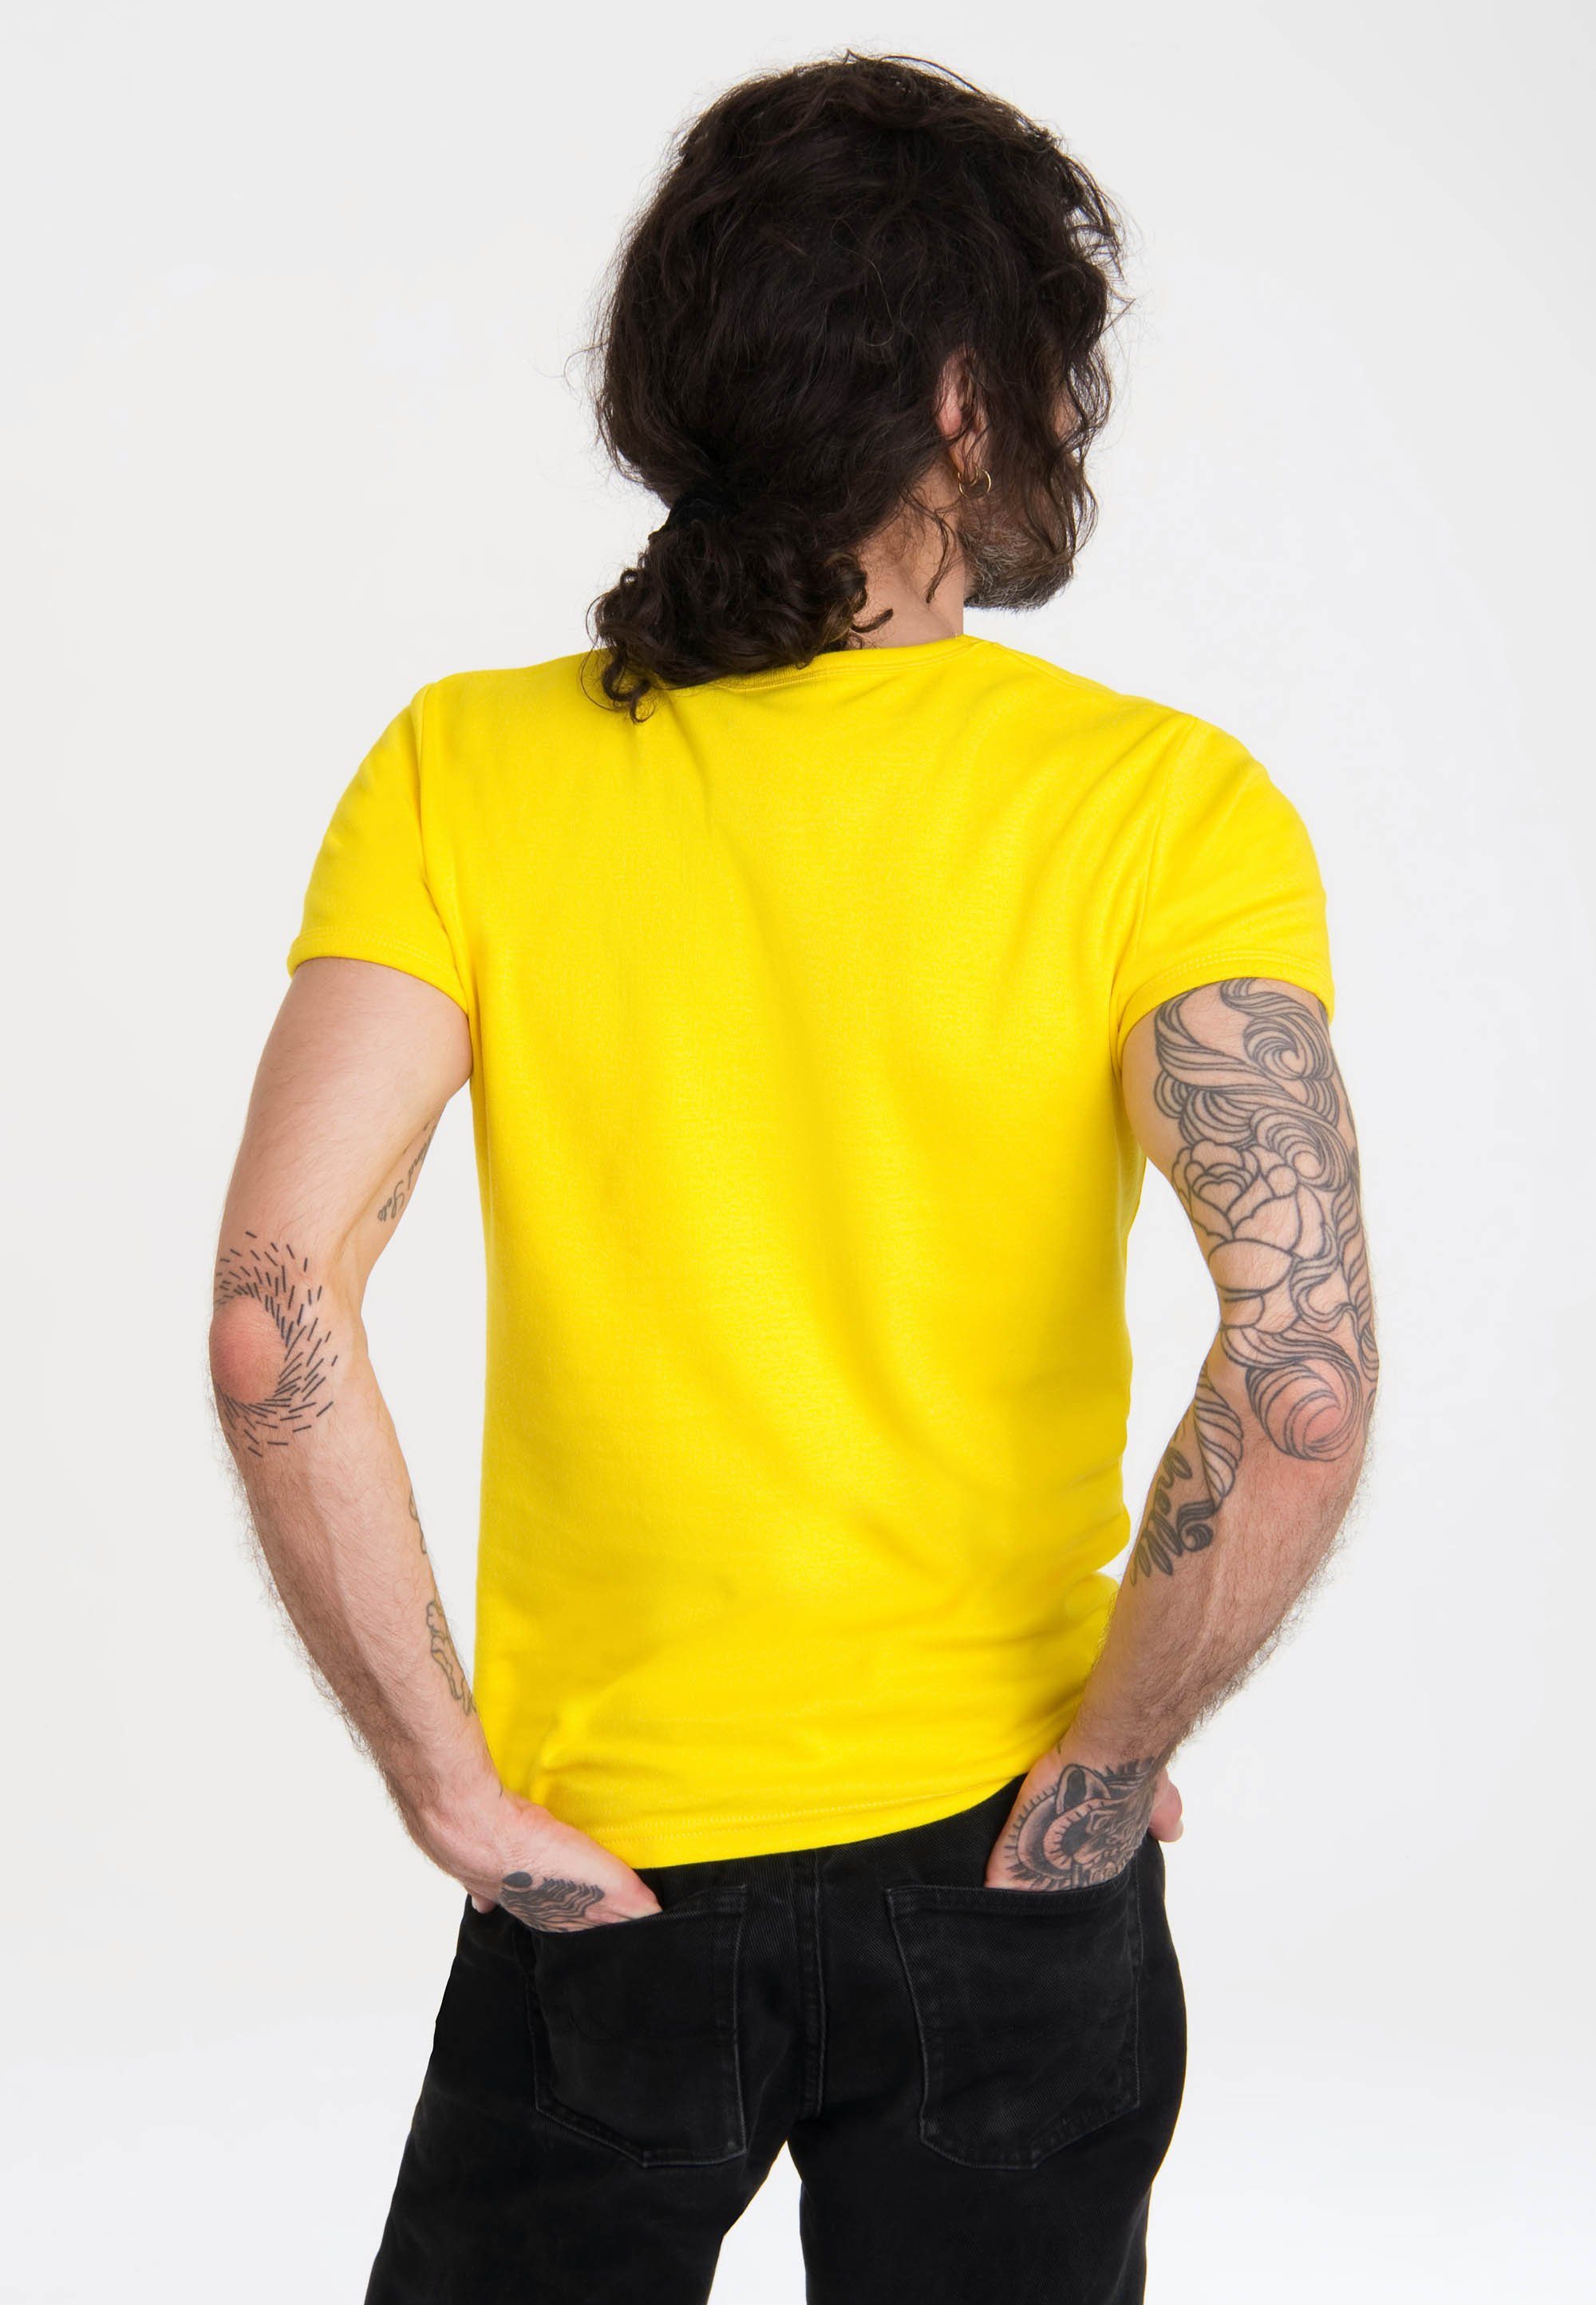 Motorrad gelb T-Shirt Krümelmonster mit lizenziertem Print Sesamstraße - LOGOSHIRT